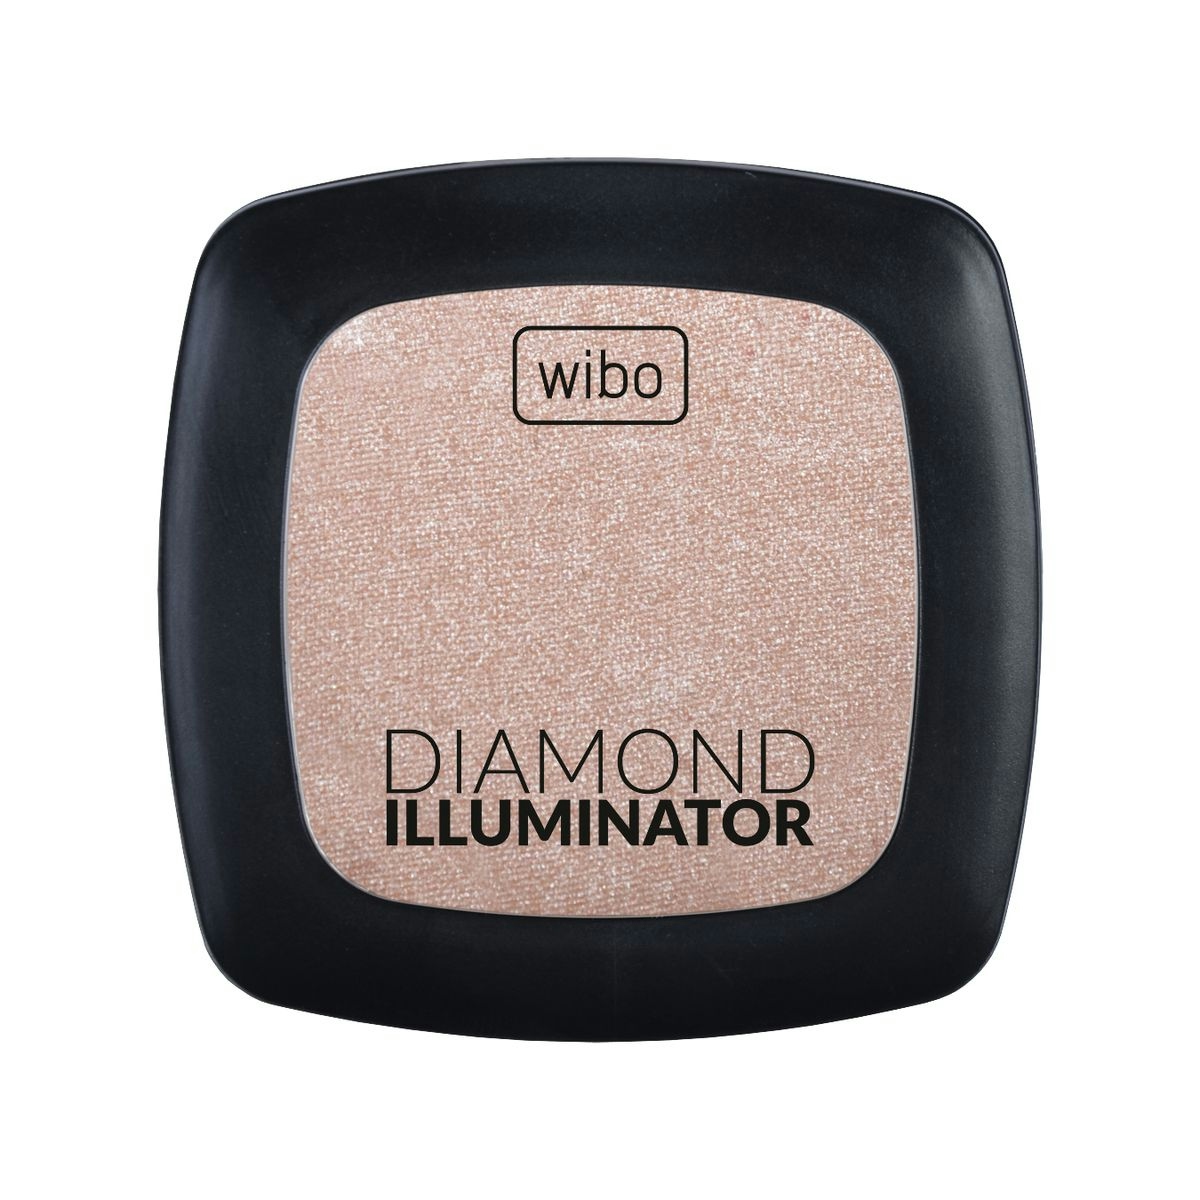 Iluminador Diamond WIBO